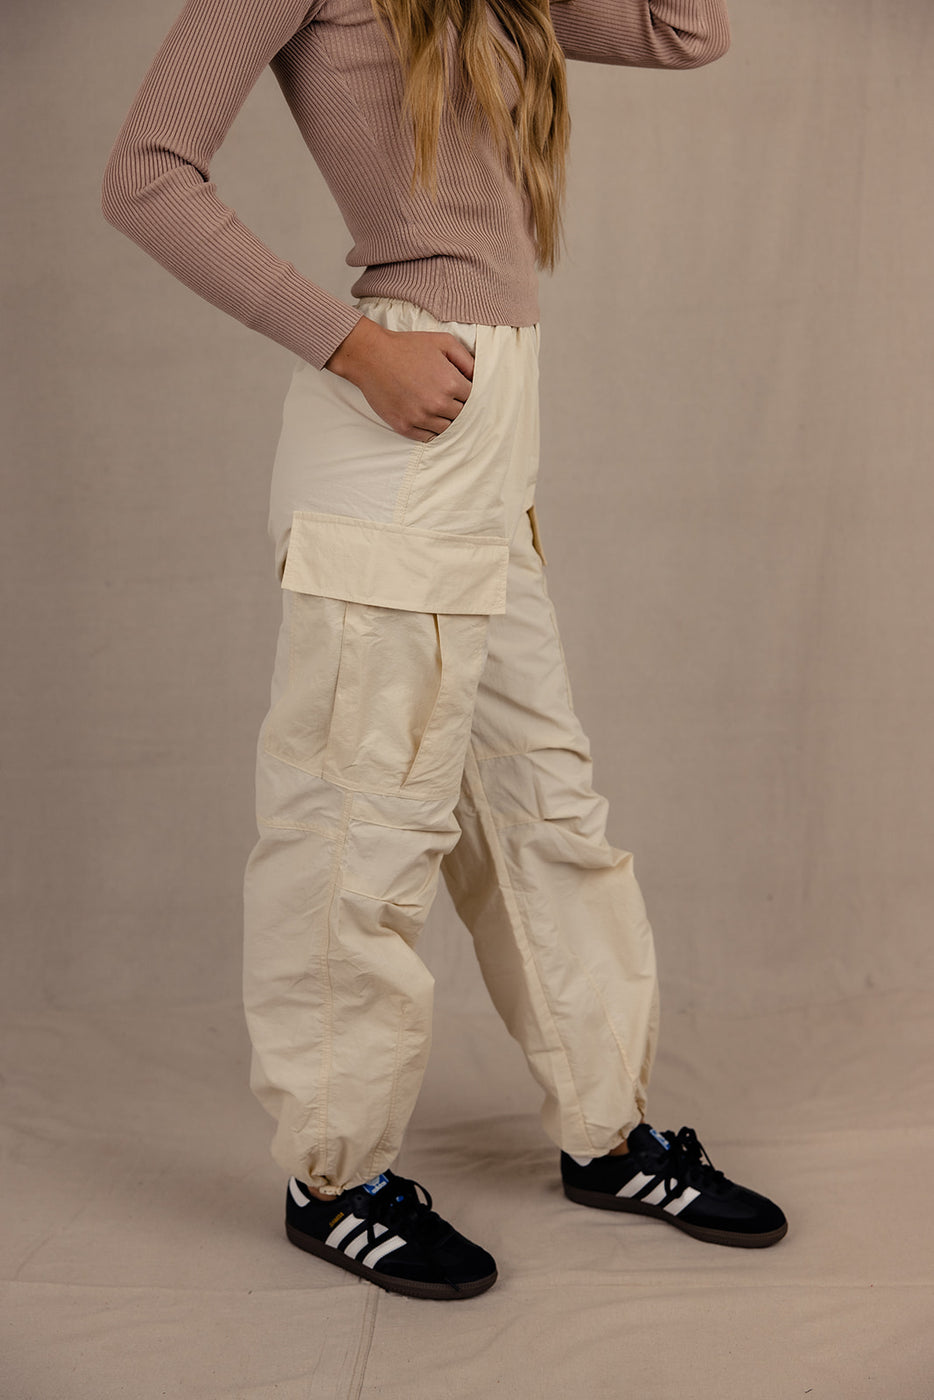 a woman wearing a beige pants